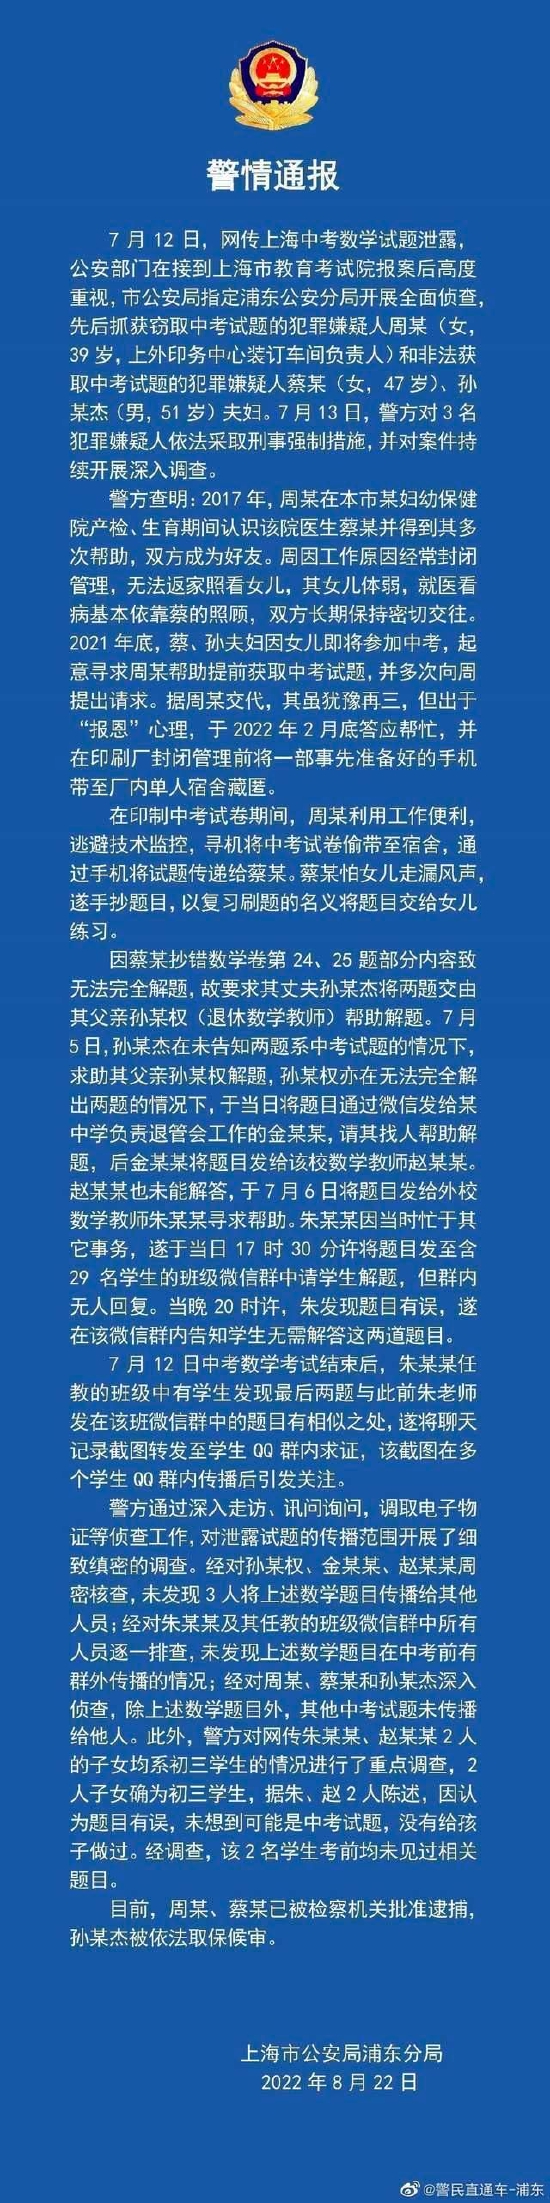 网传上海中考数学试题泄露 警方通报调查处理情况